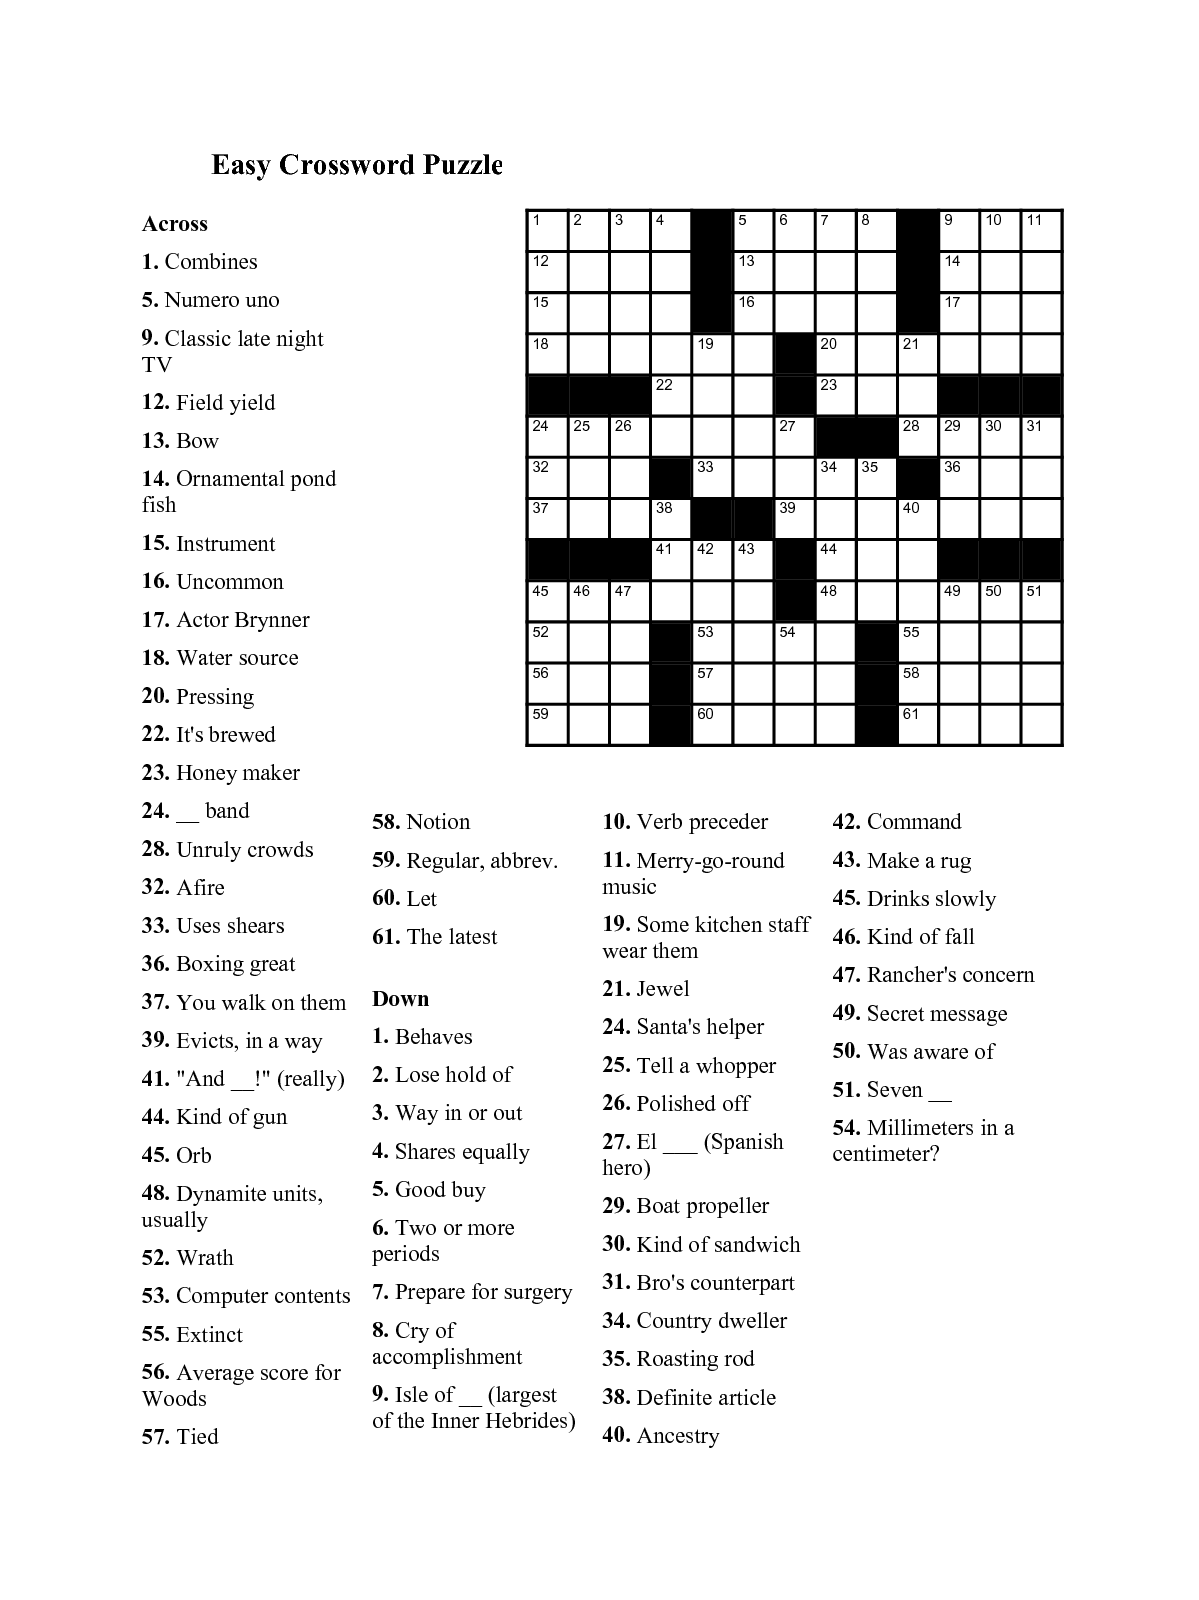 Easy Printable Crossword Puzzles For Seniors Easy Crossword Puzzle